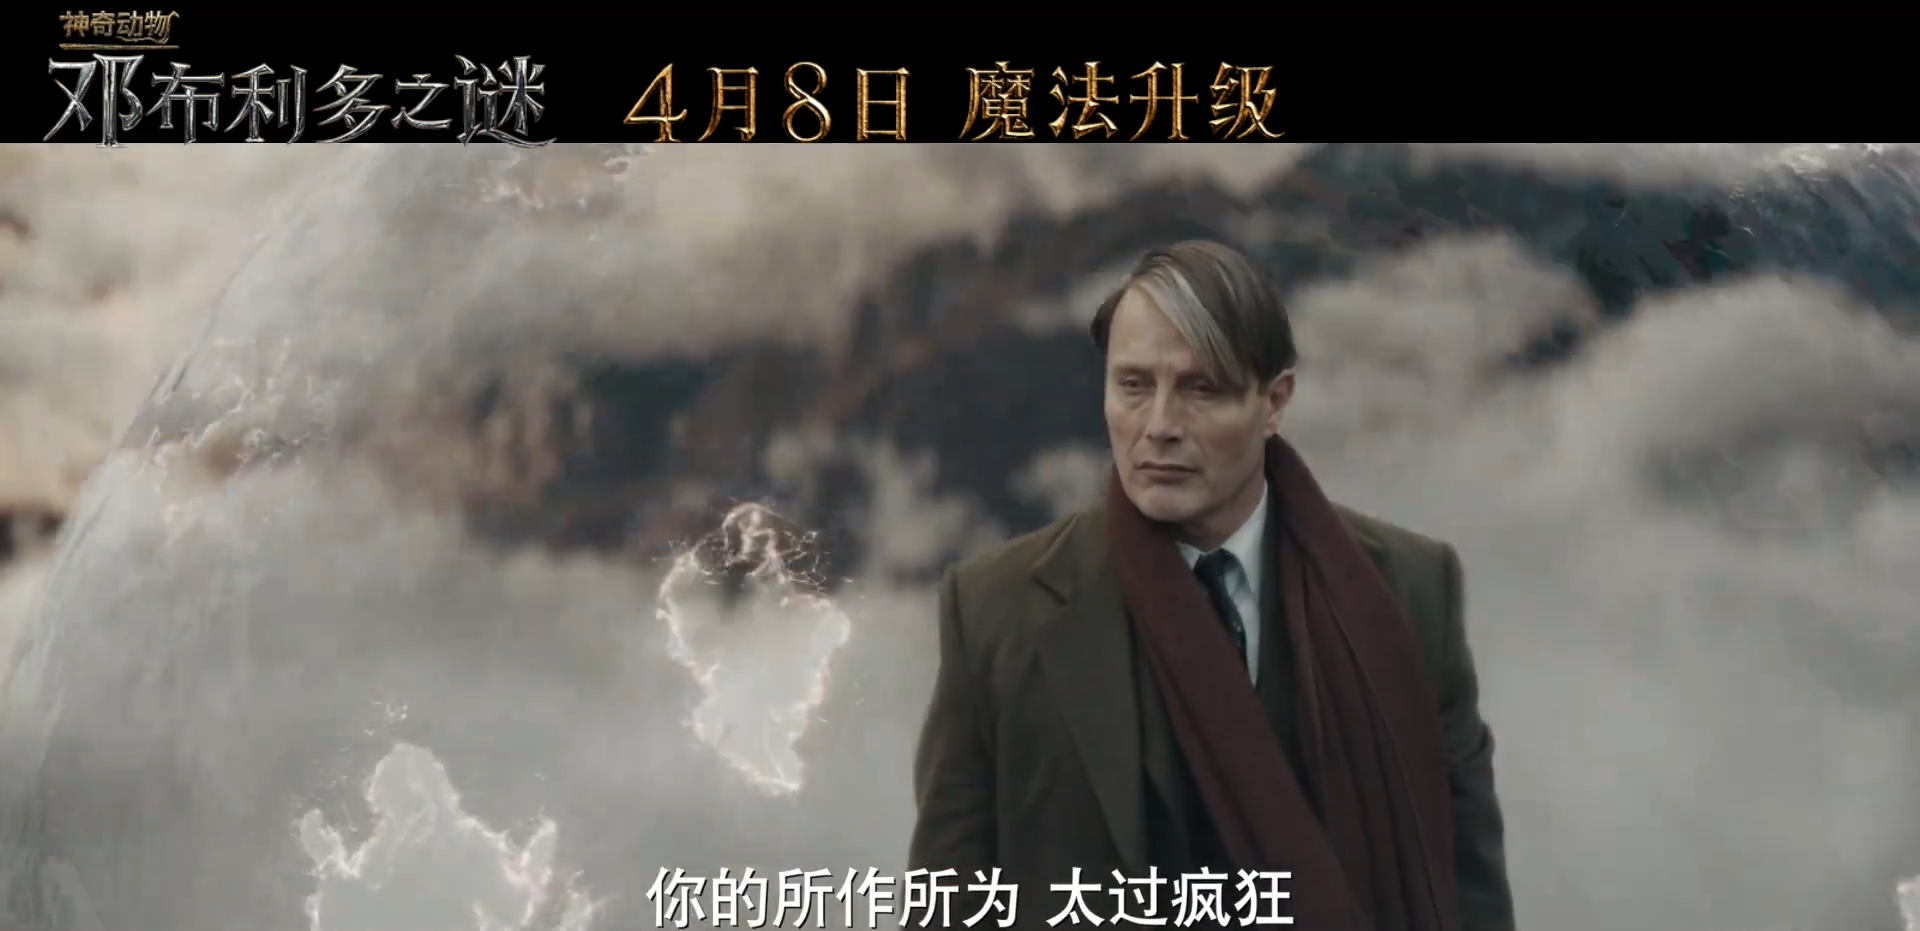 《神奇动物:邓布利多之谜》影片将于4月8日在中国大陆地区正式公映